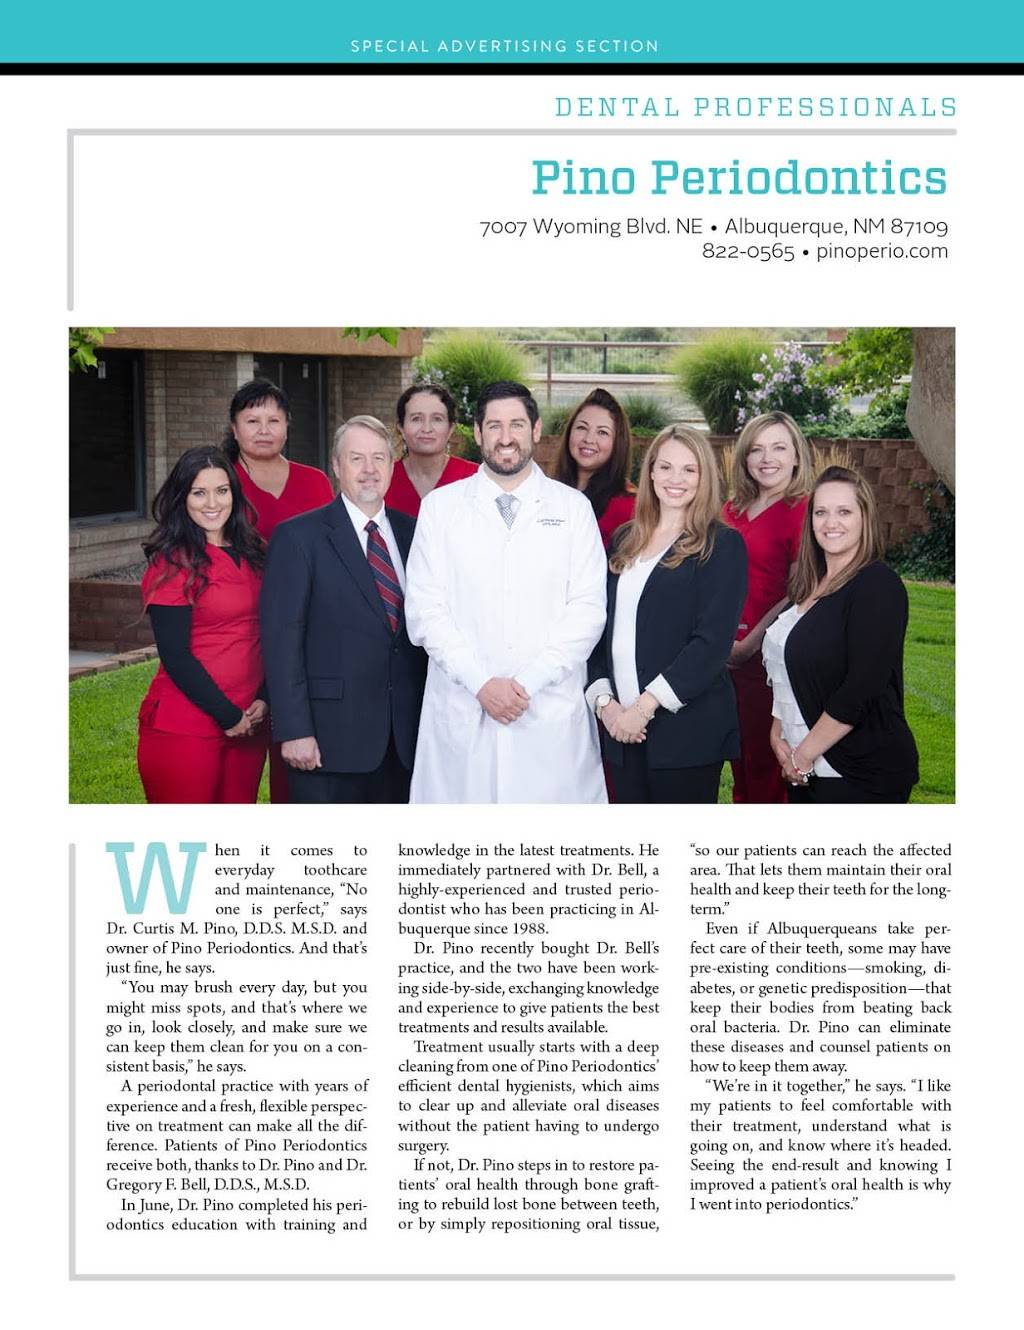 Pino Periodontics, Curtis Pino DDS MSD | 7007 Wyoming Blvd NE Suite D-1, Albuquerque, NM 87109 | Phone: (505) 822-0565